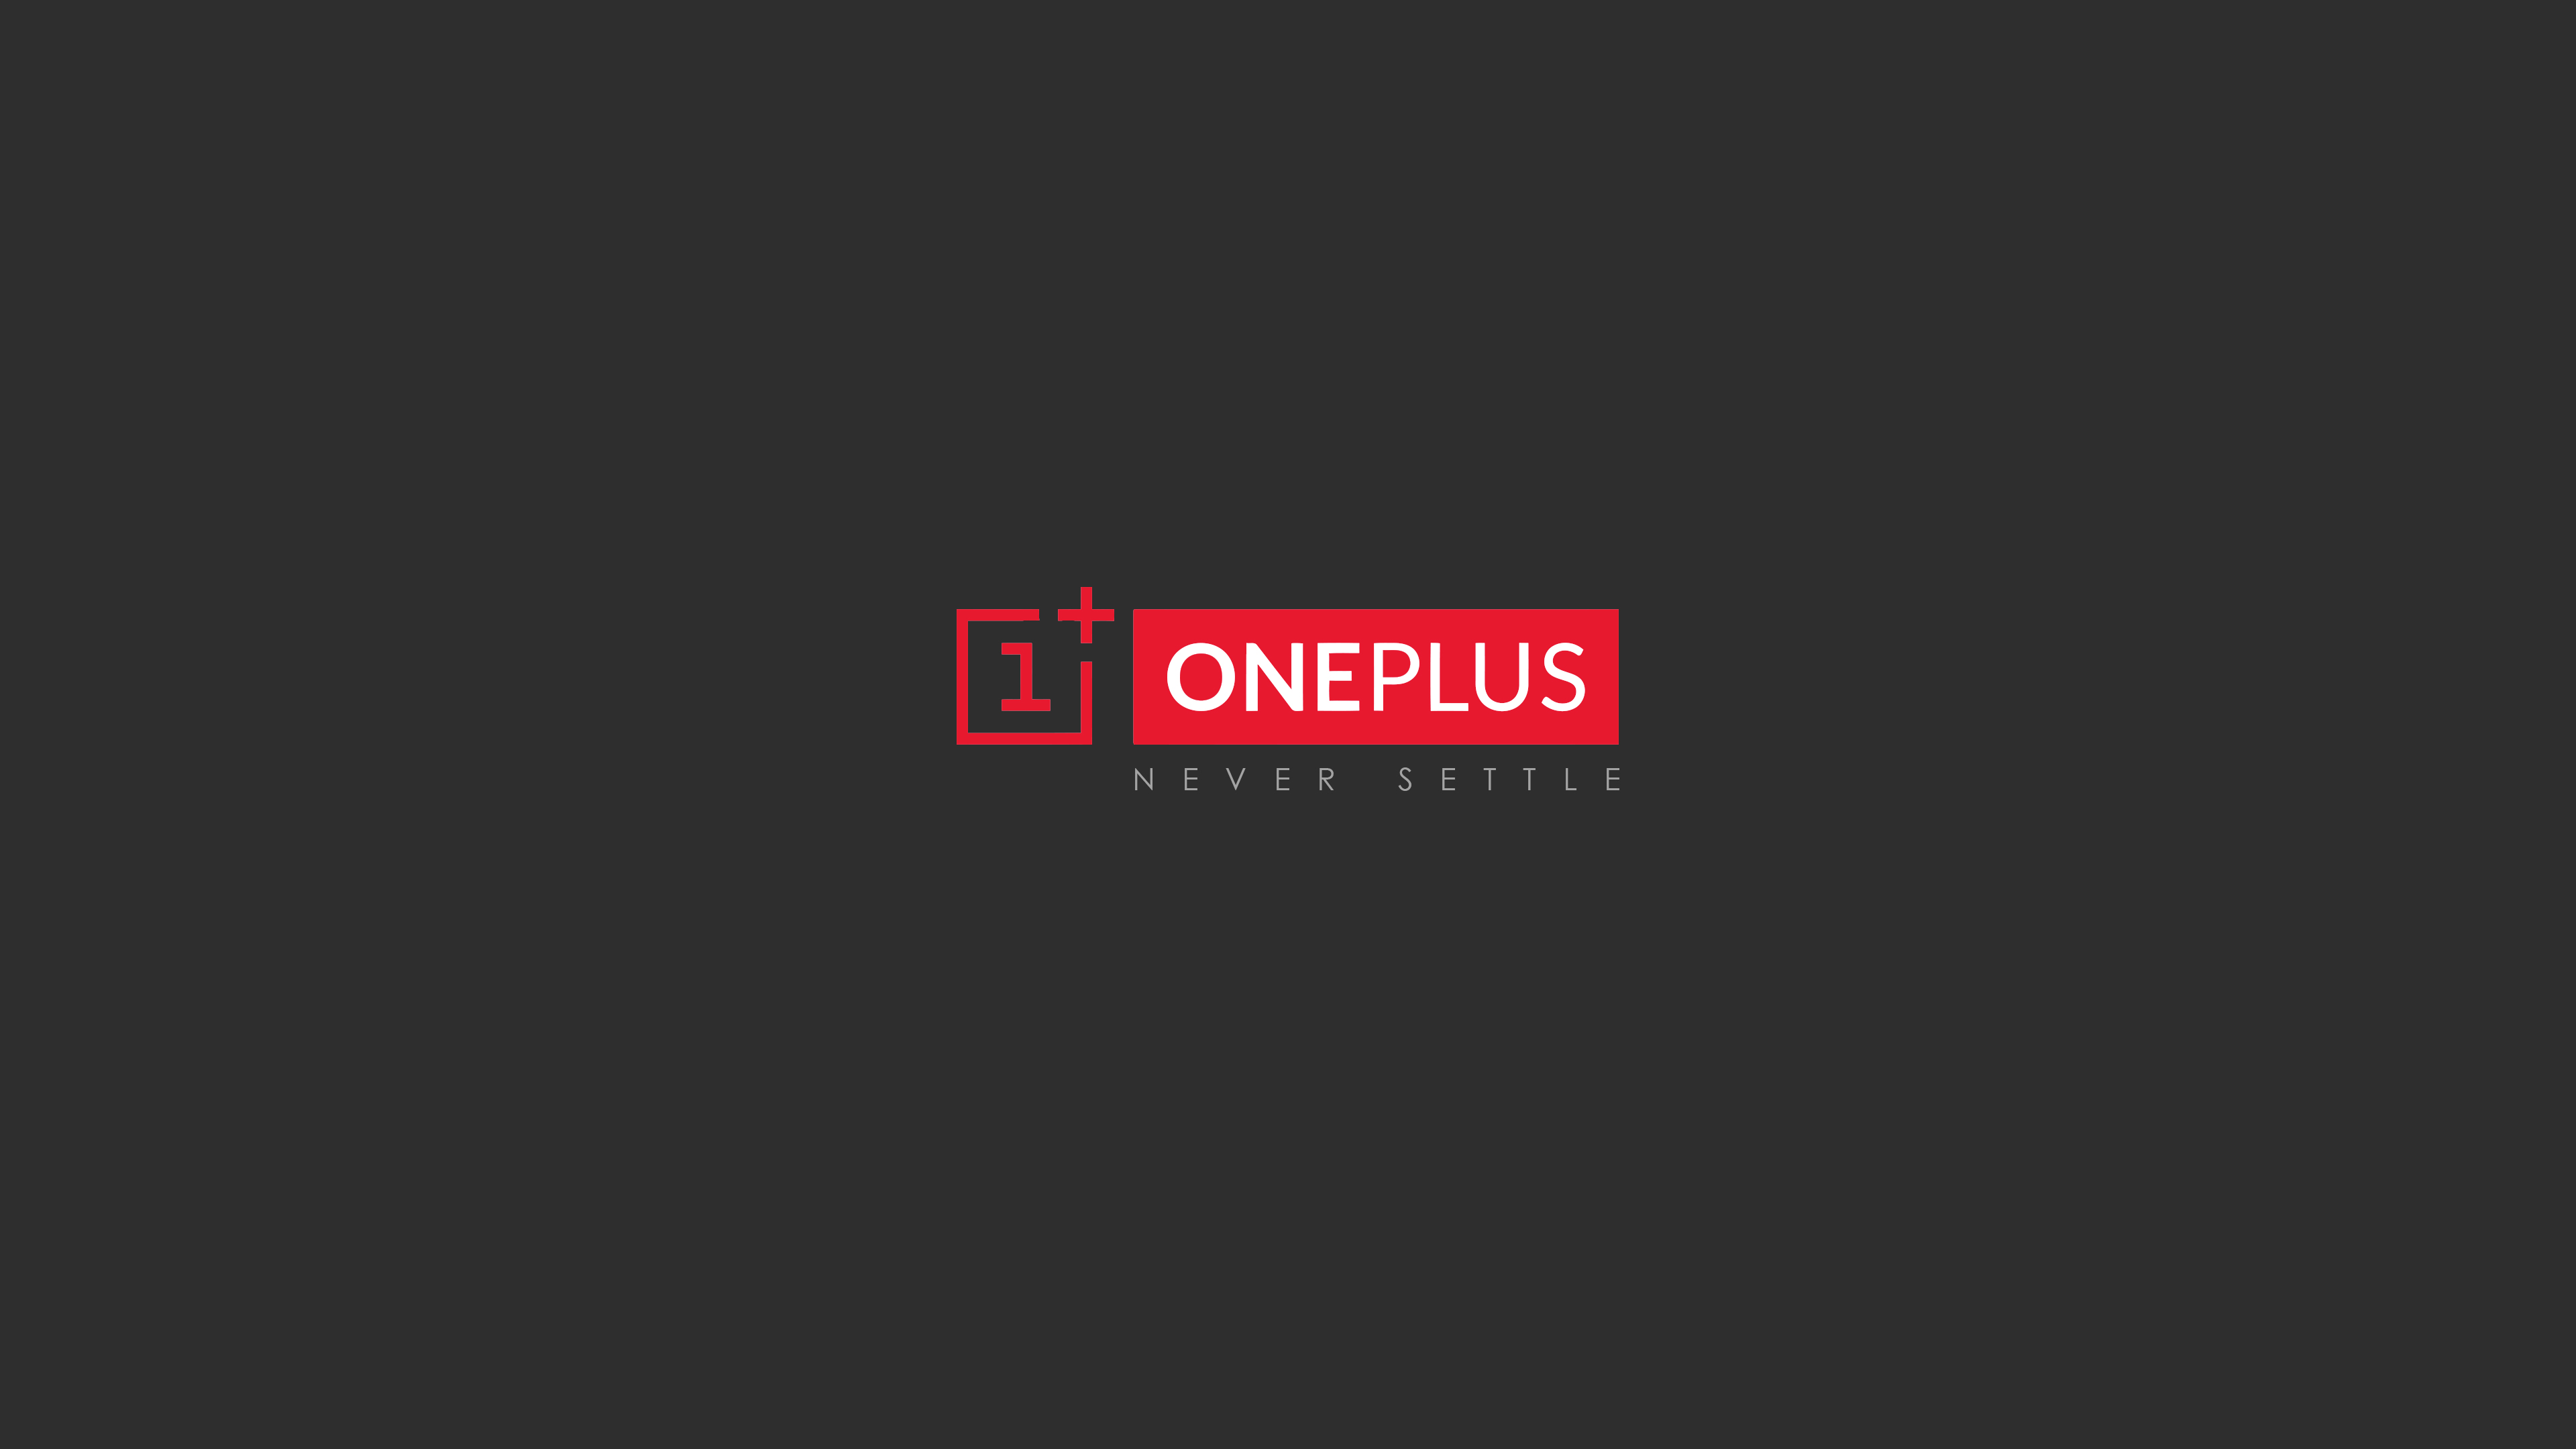 oneplus5, Oneplus, Brand, Logo, Phone Wallpaper